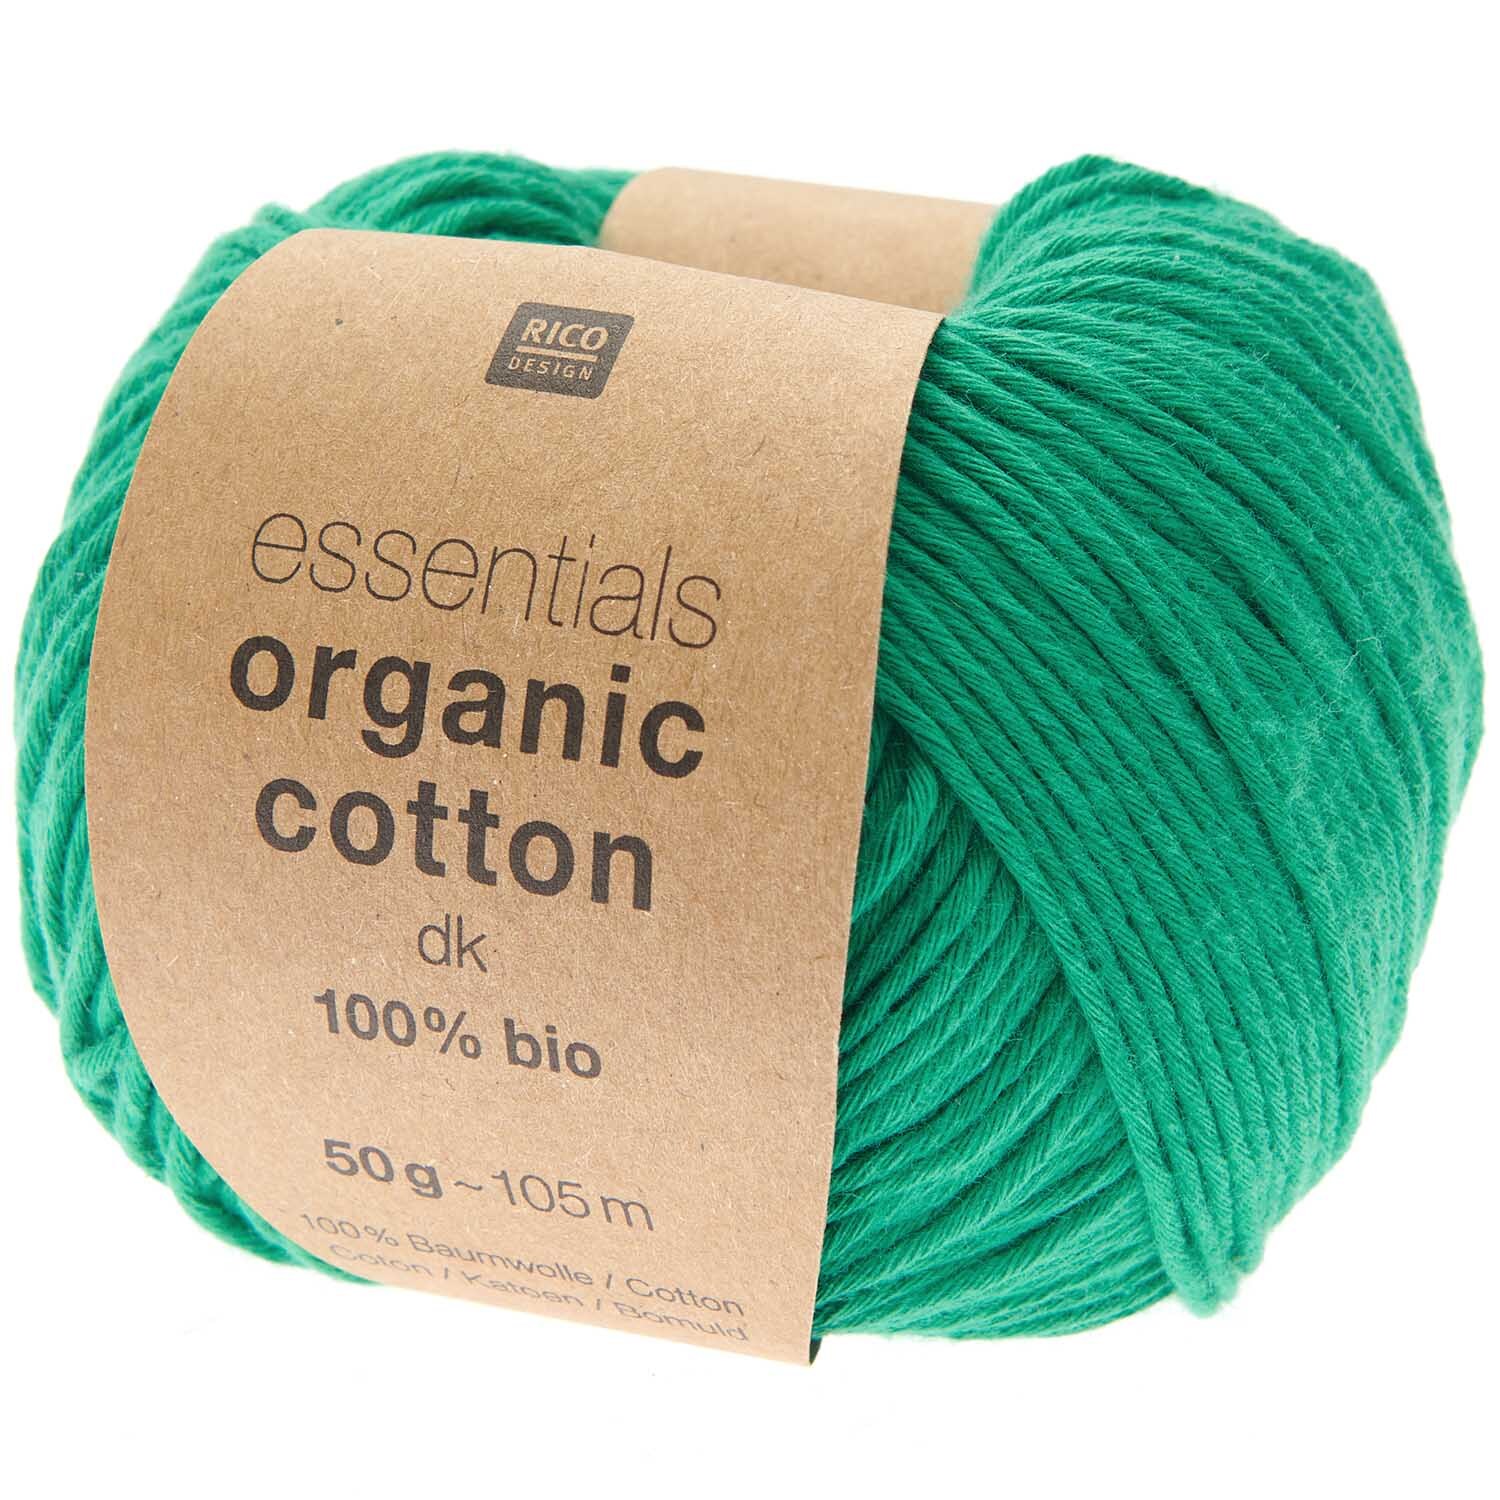 Essentials Organic Cotton dk